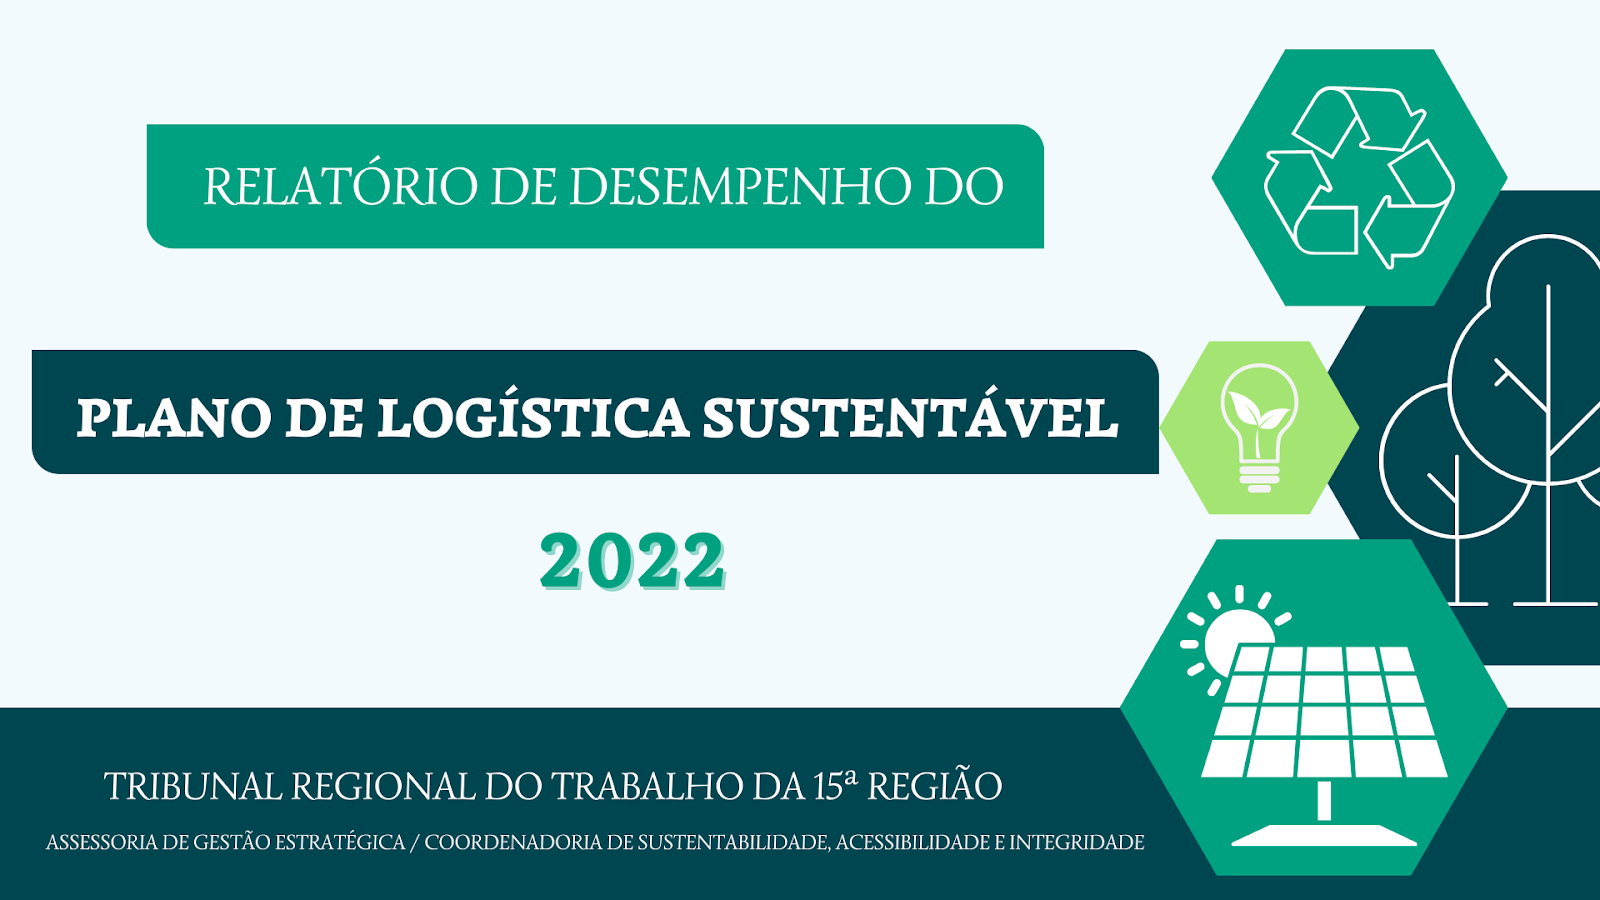 TRT-15 apresenta o Relatório de Desempenho do Plano de Logística Sustentável - PLS e o Relatório de Acessibilidade e Inclusão